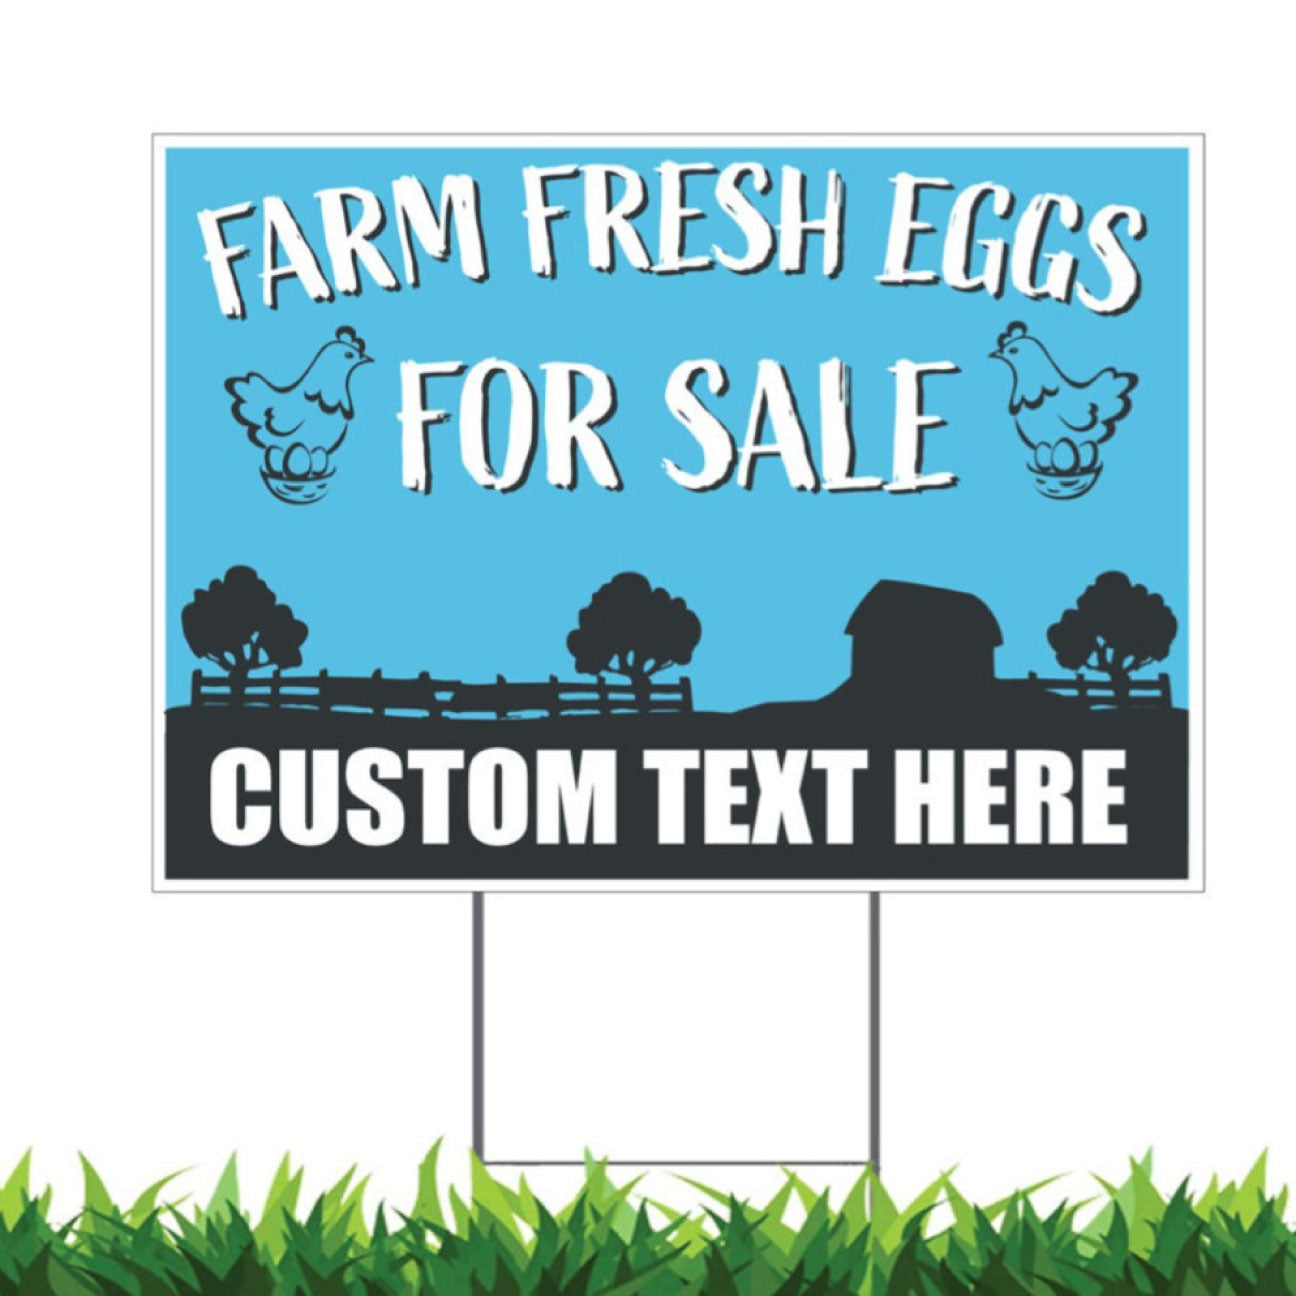 Custom Farm Fresh Eggs For Sale, Yard Sign, 18 x 24 inch, v2